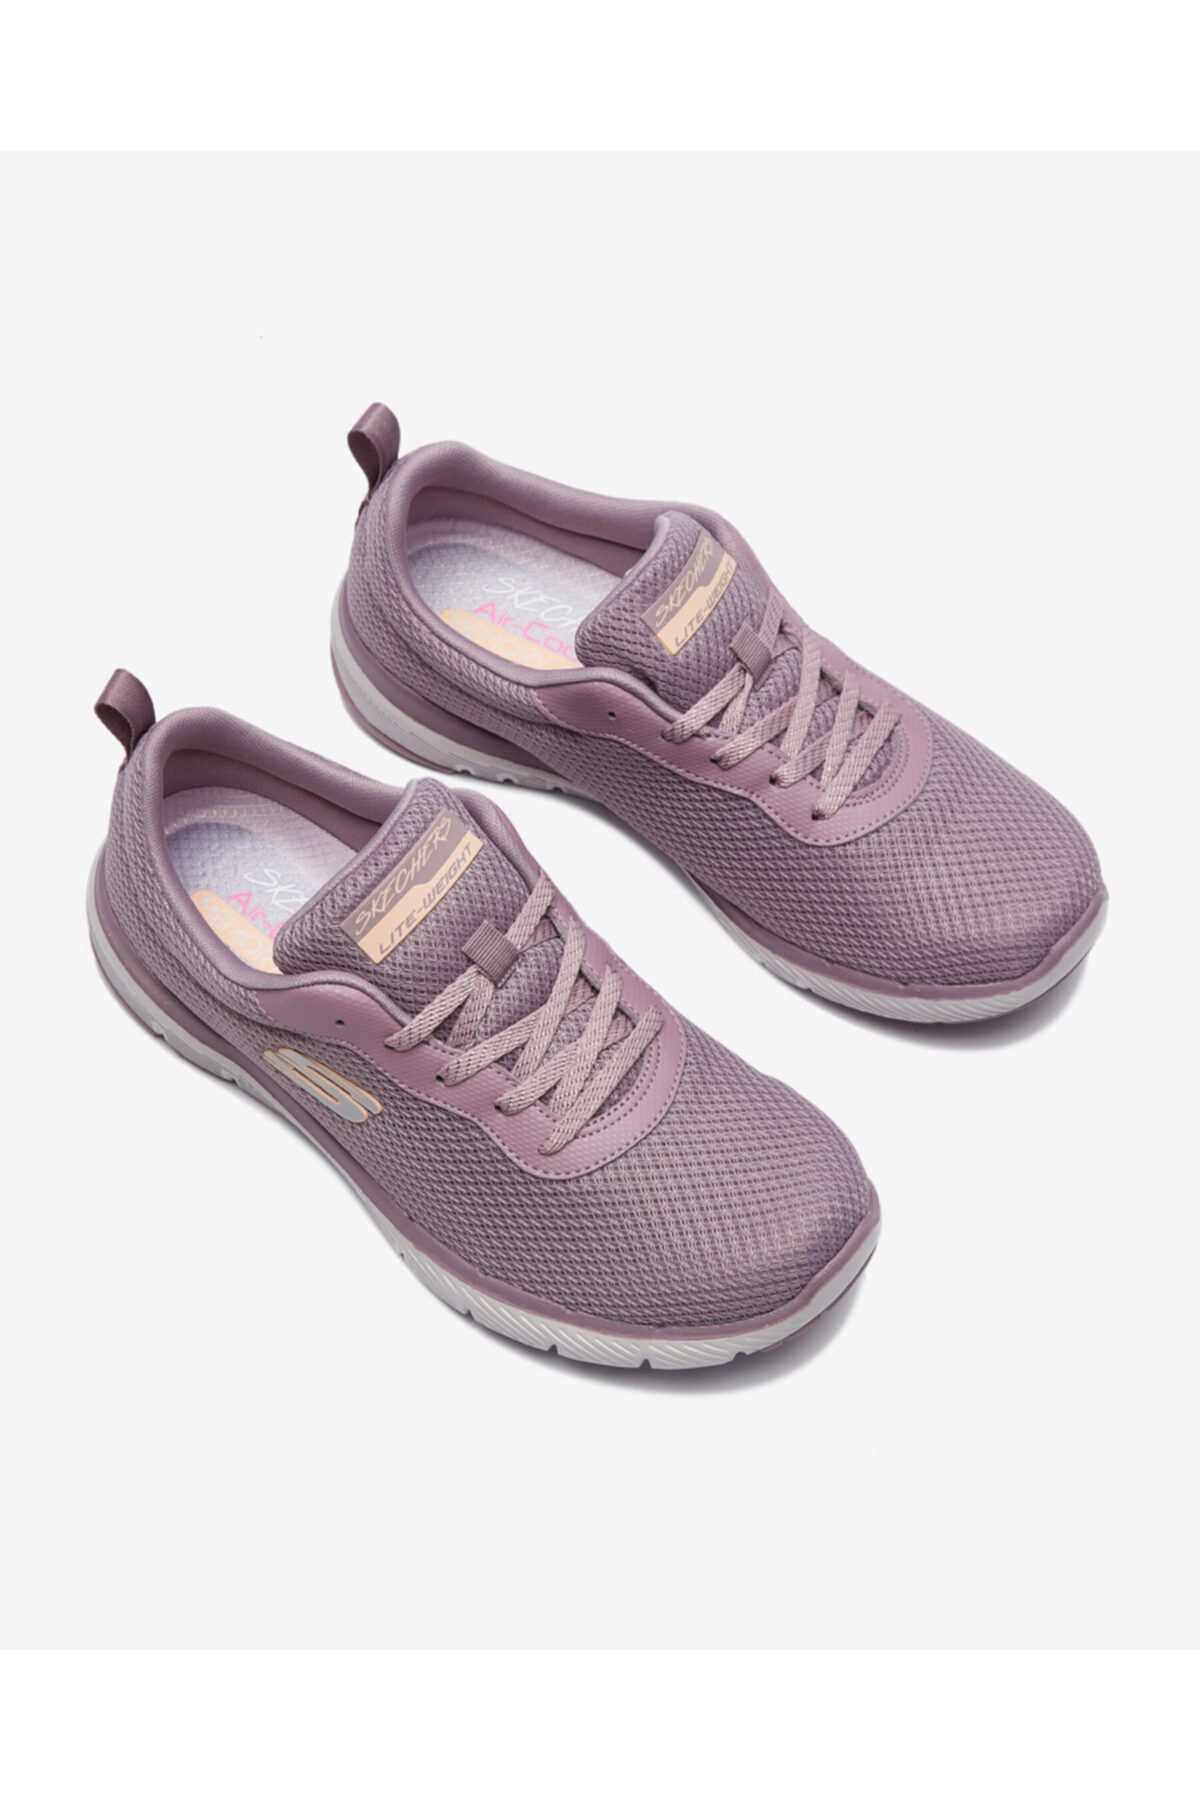 کفش پیاده روی زنانه طرح جدید برند SKECHERS رنگ بنفش کد ty123739604